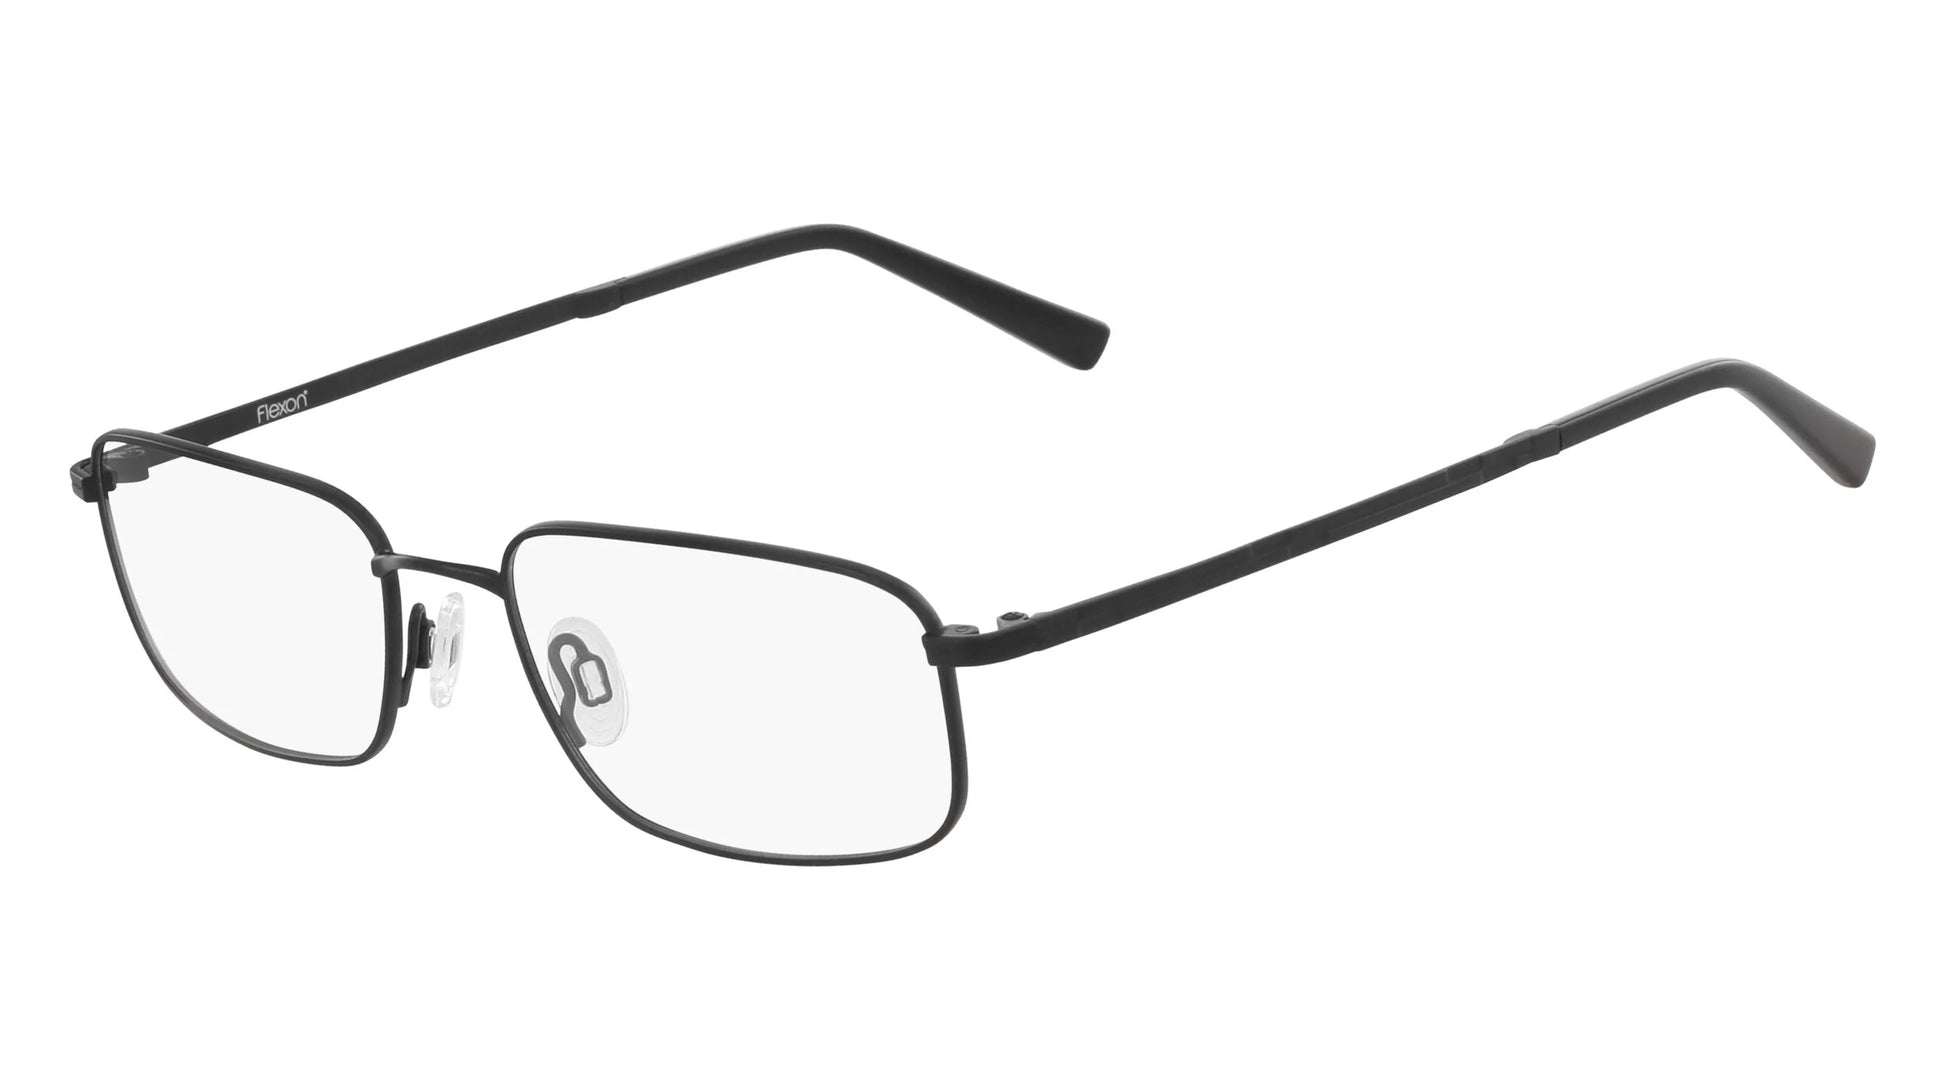 Flexon ORWELL 600 Eyeglasses Black